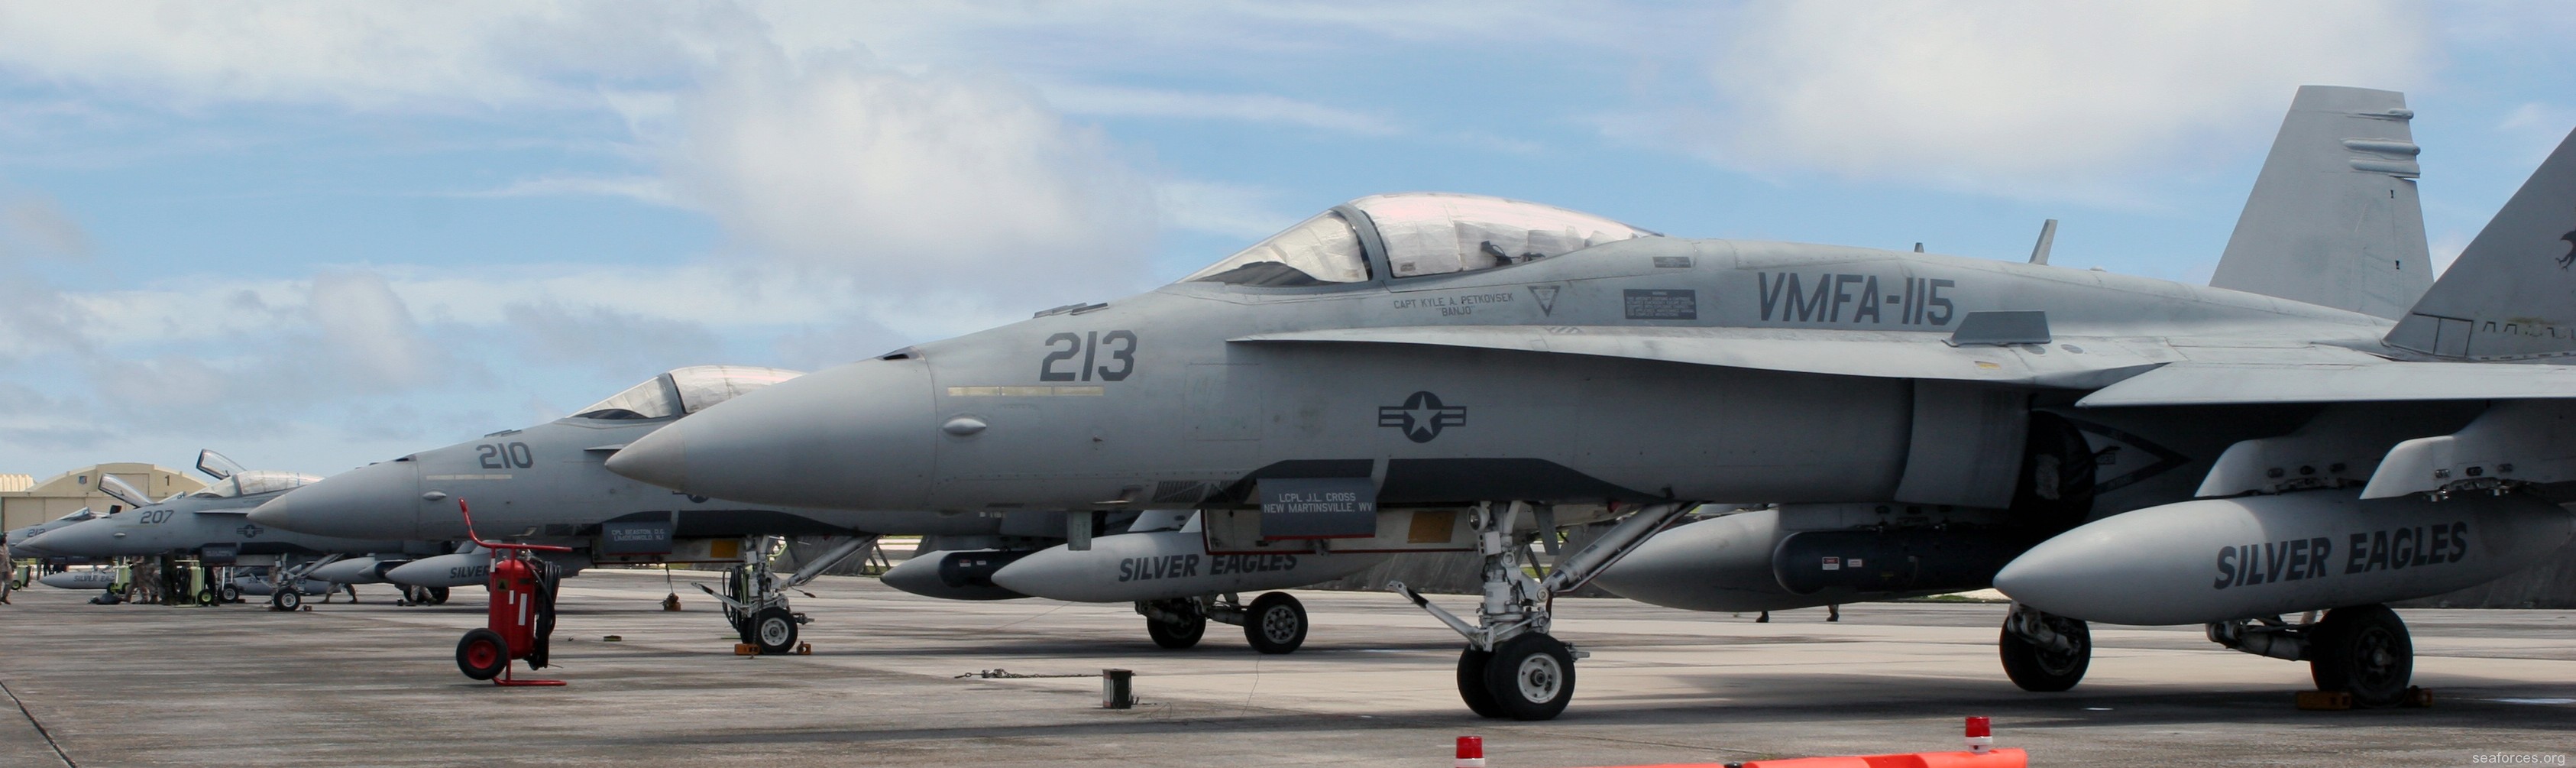 vmfa-115 silver eagles marine fighter attack squadron f/a-18a+ hornet 143